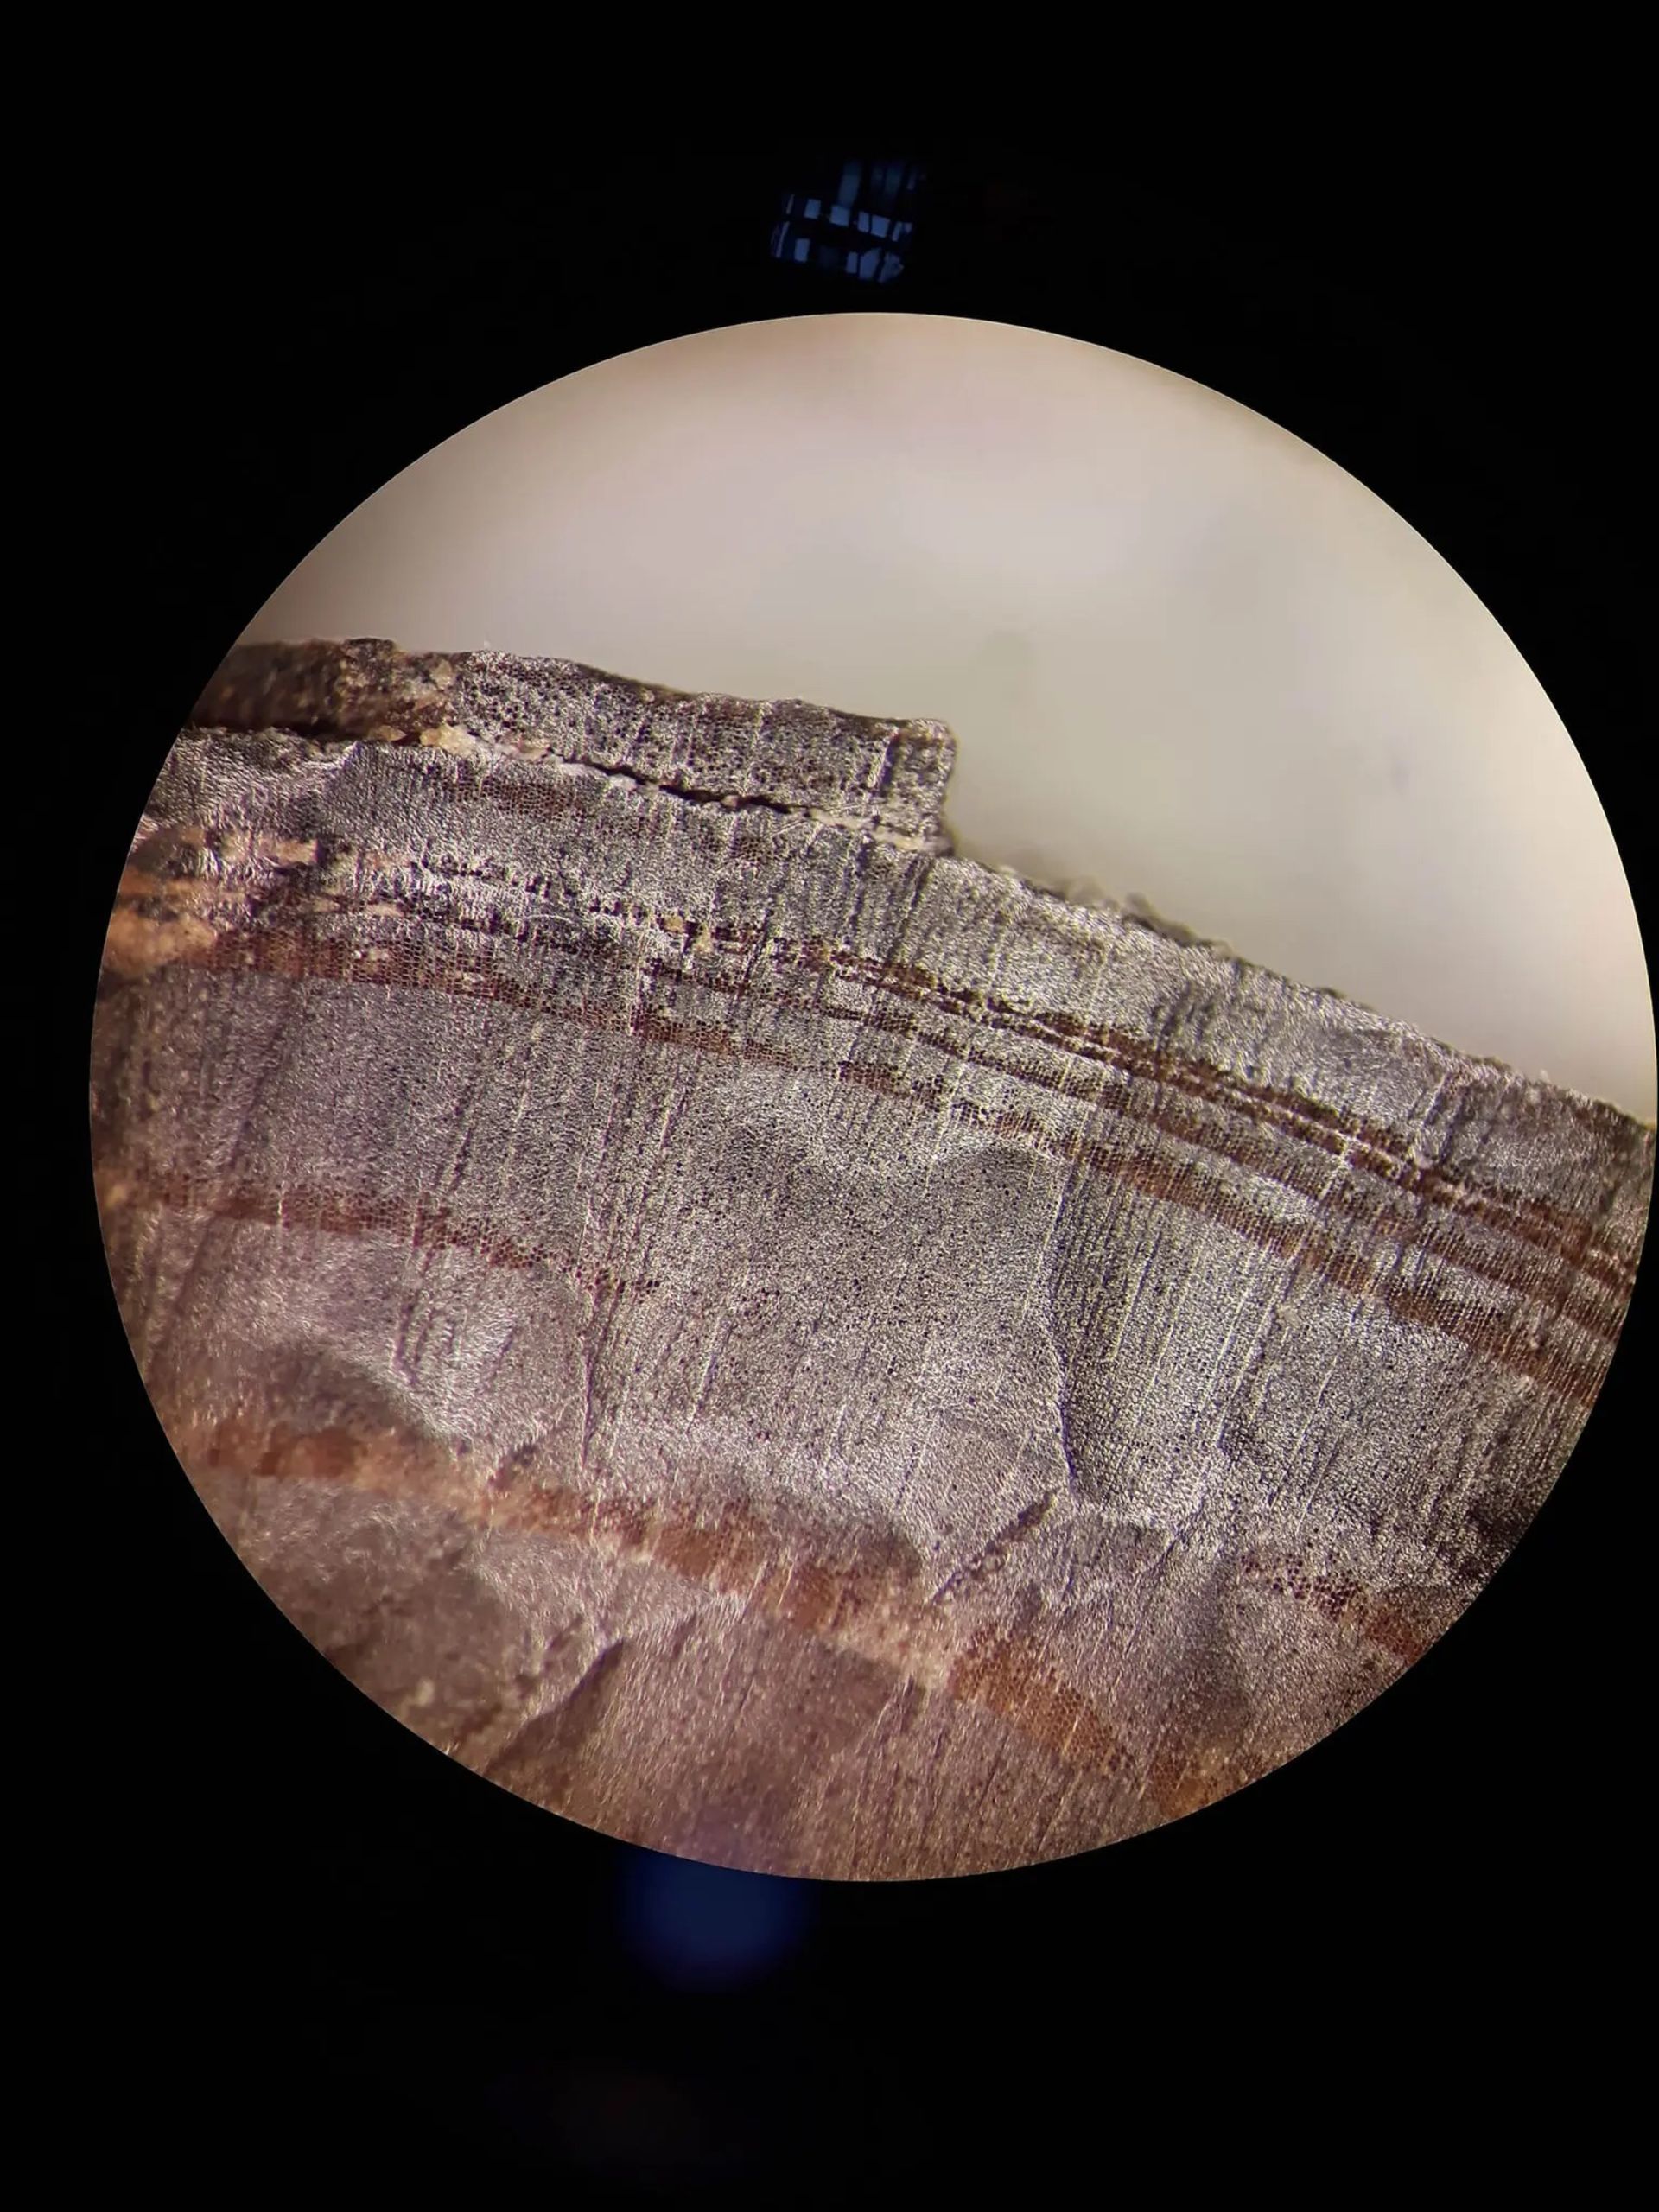 تصویر میکروسکوپی از تکه چوب